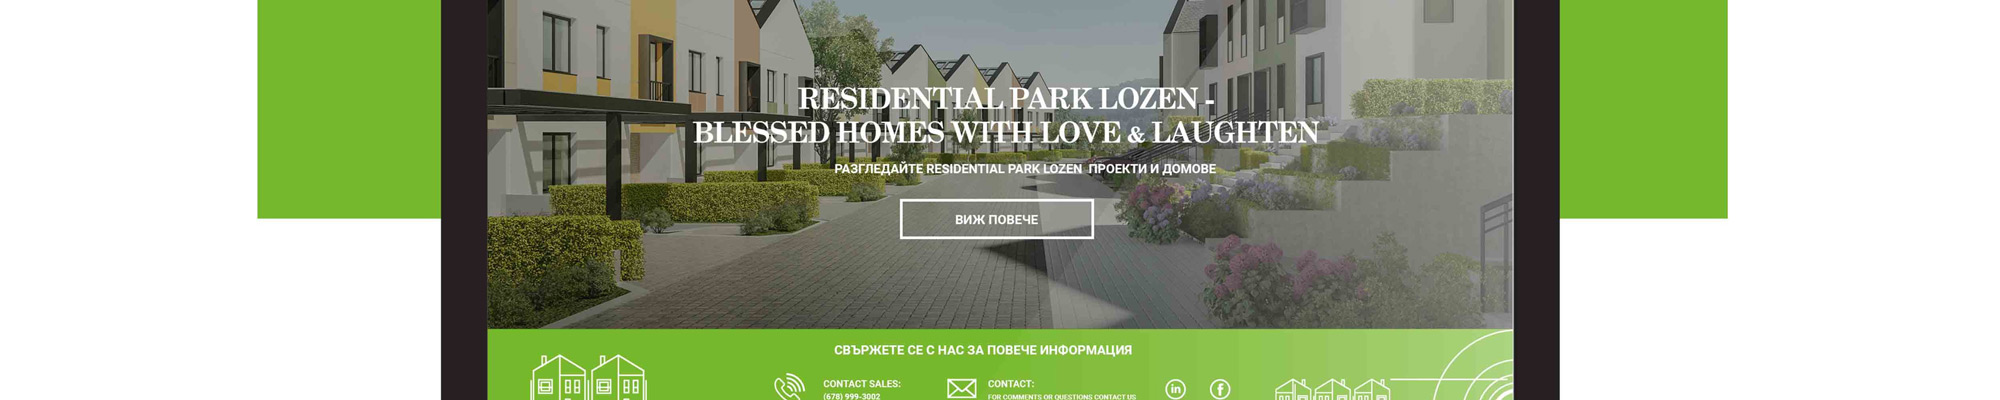 residential-park-lozen